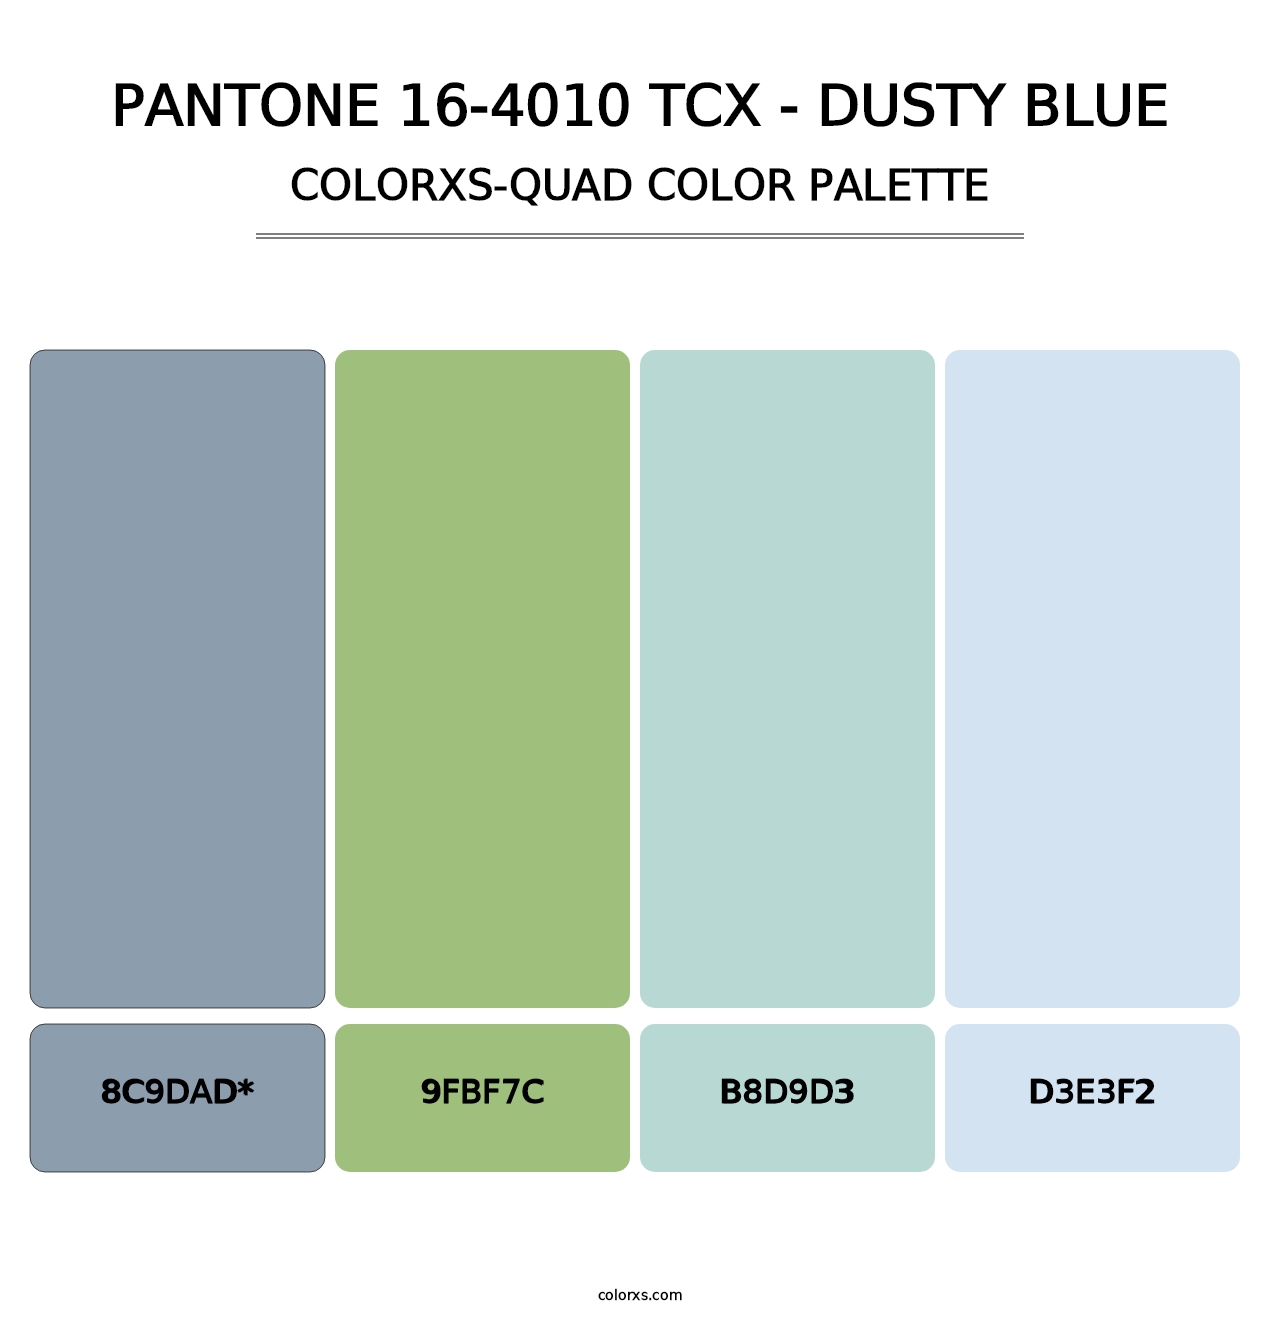 PANTONE 16-4010 TCX - Dusty Blue - Colorxs Quad Palette